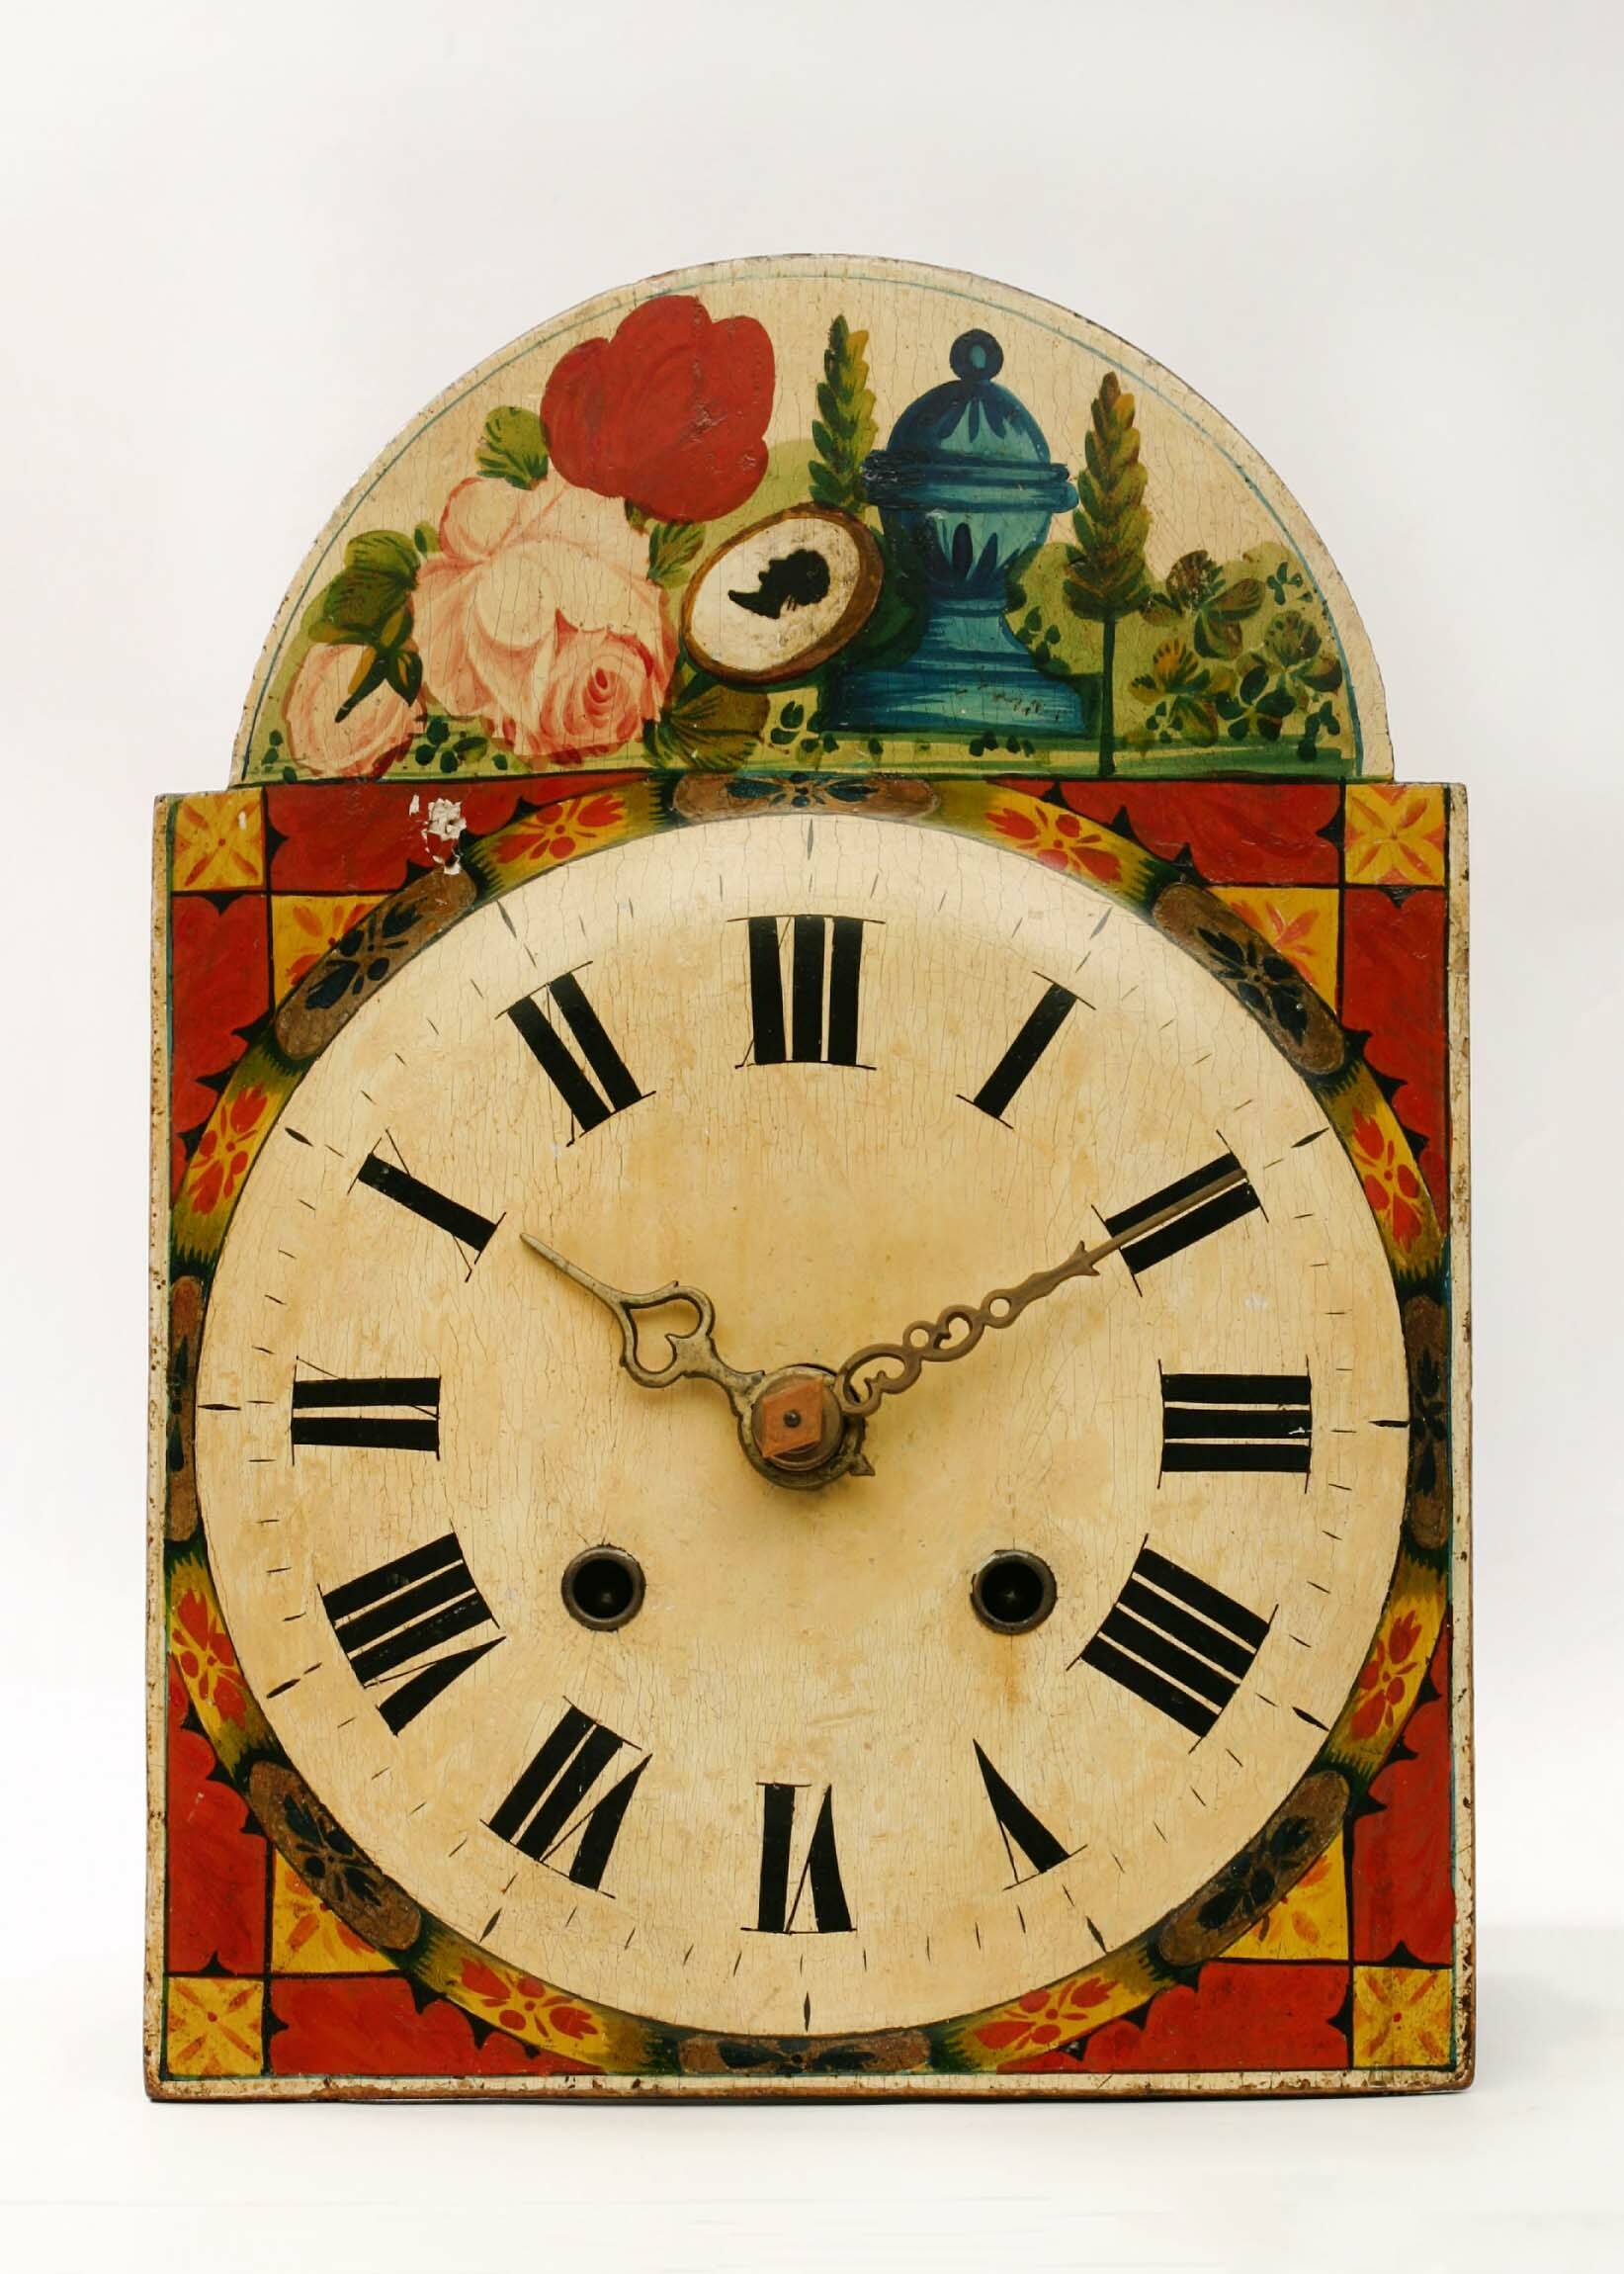 Lackschilduhr, P. H., Schwarzwald, 1842 (Deutsches Uhrenmuseum CC BY-SA)